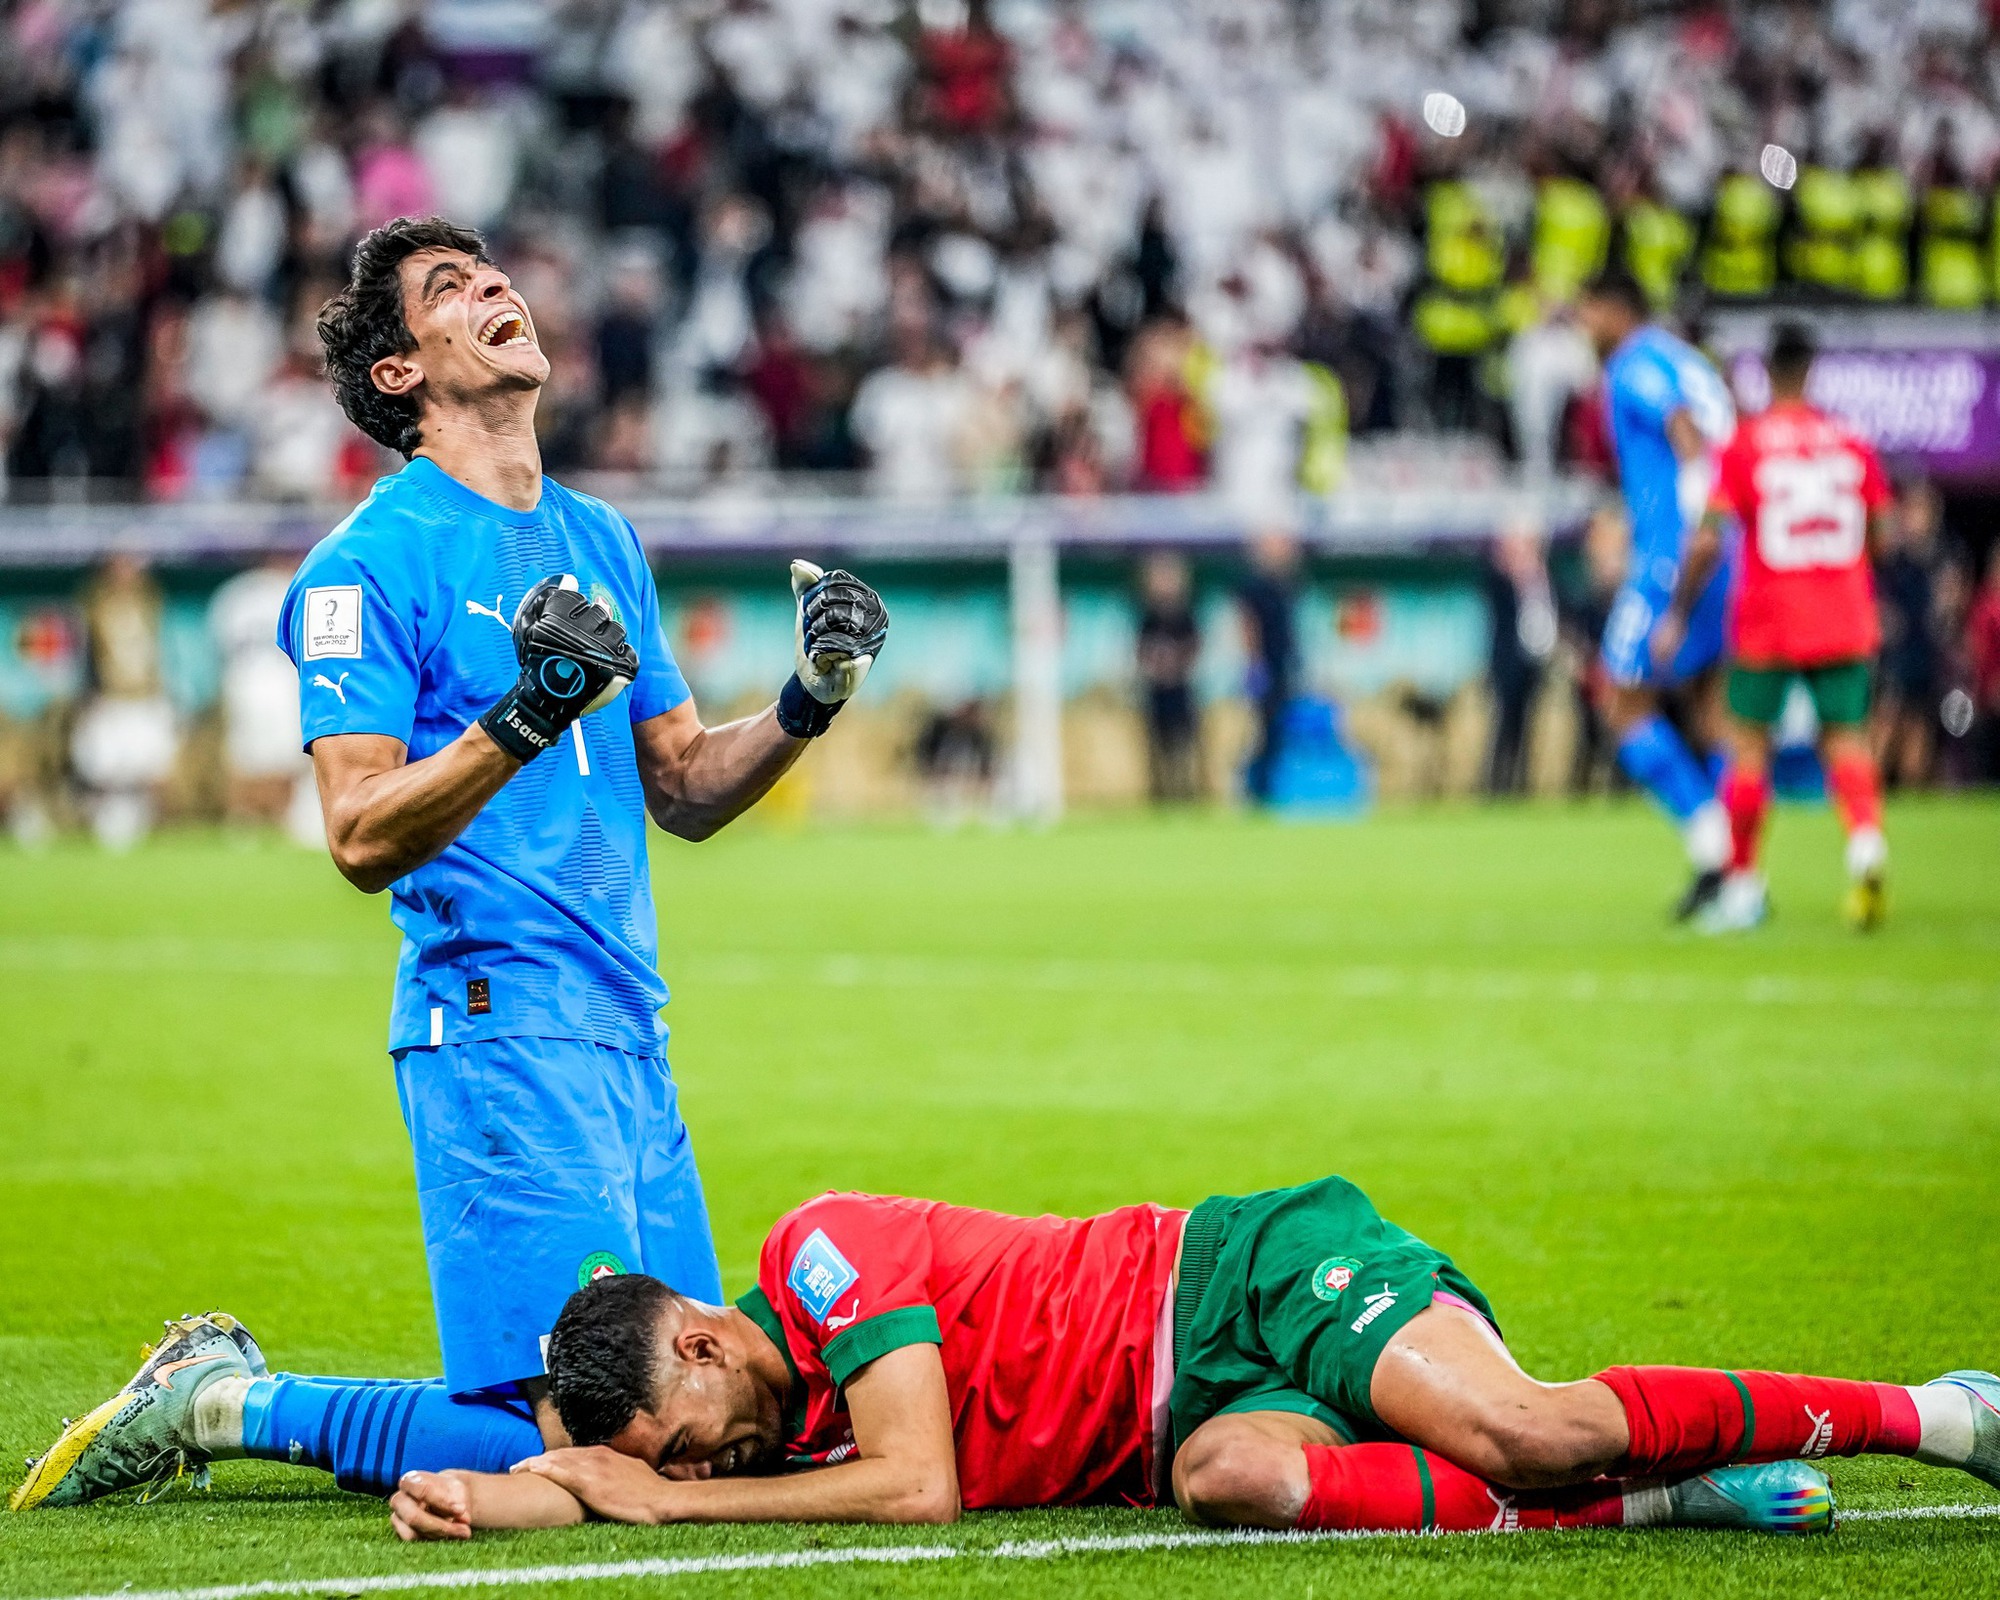 Đội tuyển Maroc liệu có thể làm nên điều kỳ diệu tiếp theo tại World Cup 2022?